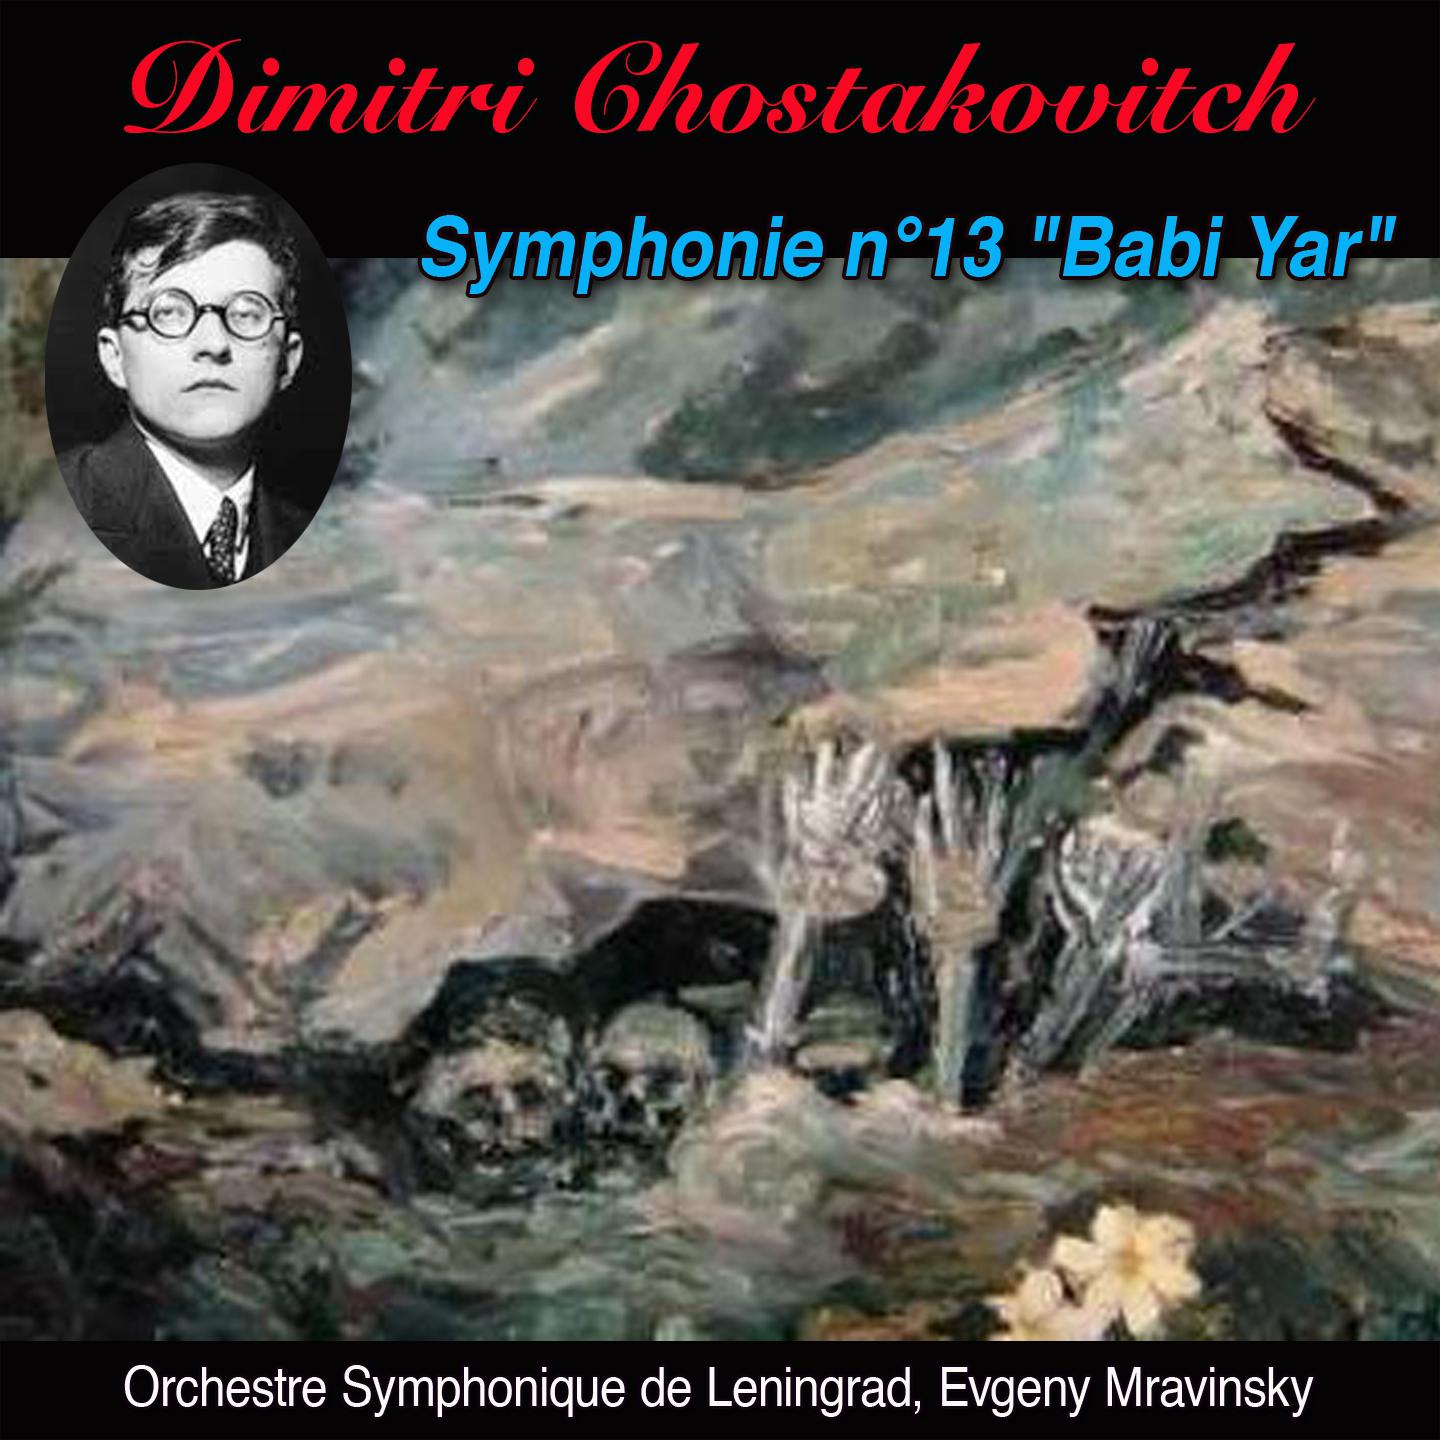 Babi yar largo Symphonie n 13 op. 113 " Babi yar"